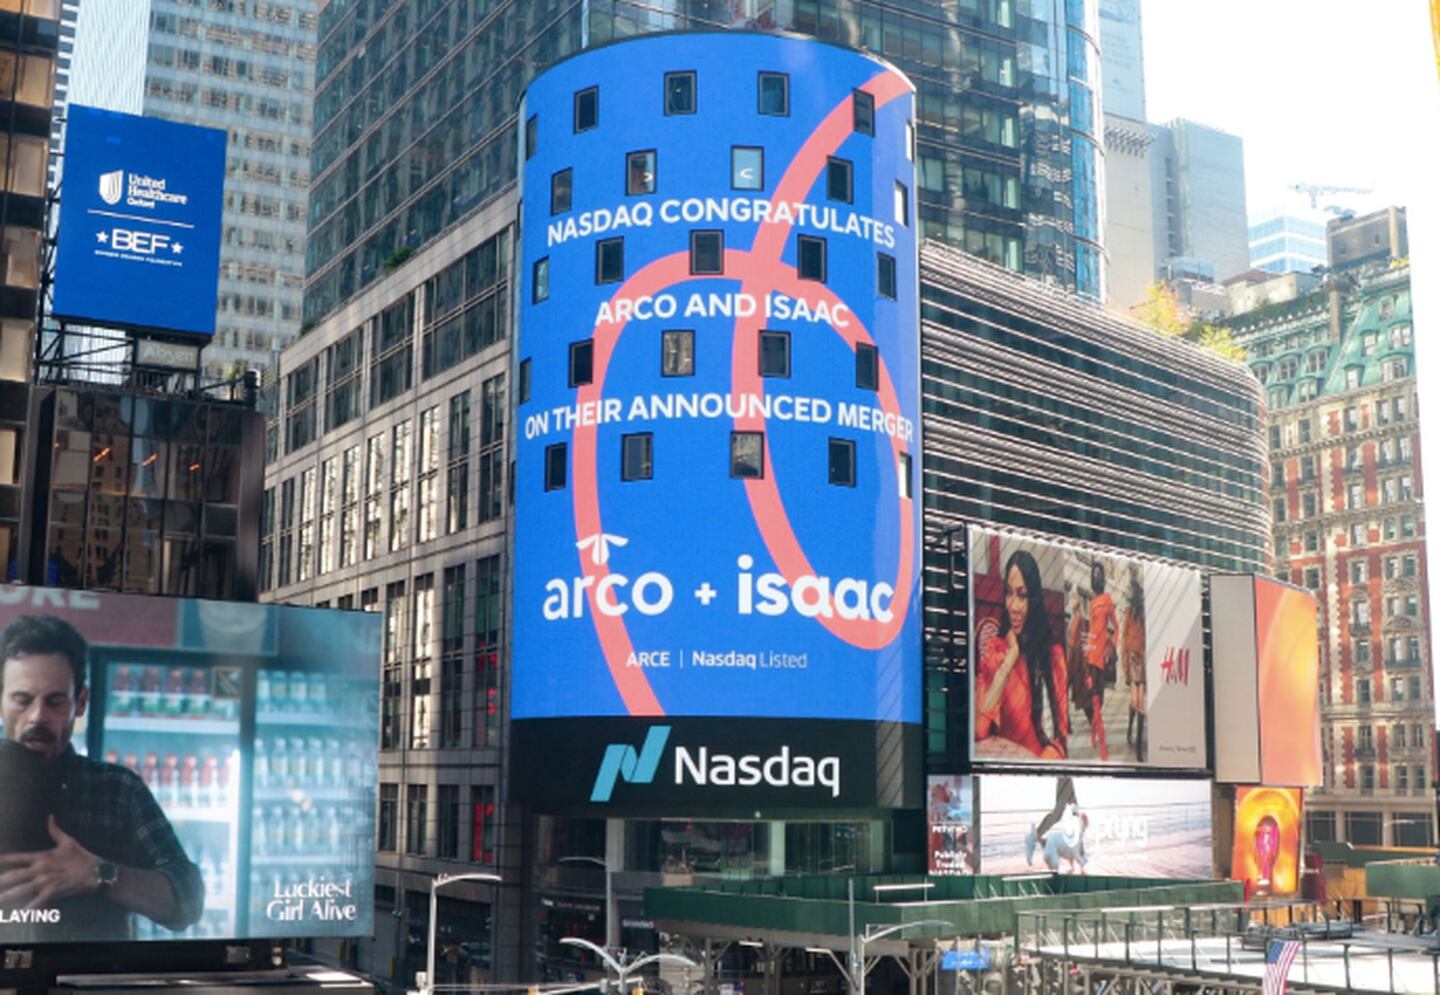 Pantalla de Nasdaq en Nueva York muestra anuncio de la adquisición de isaac por parte de Arco la semana pasada (Cortesía/Isaac/LinkedIn)